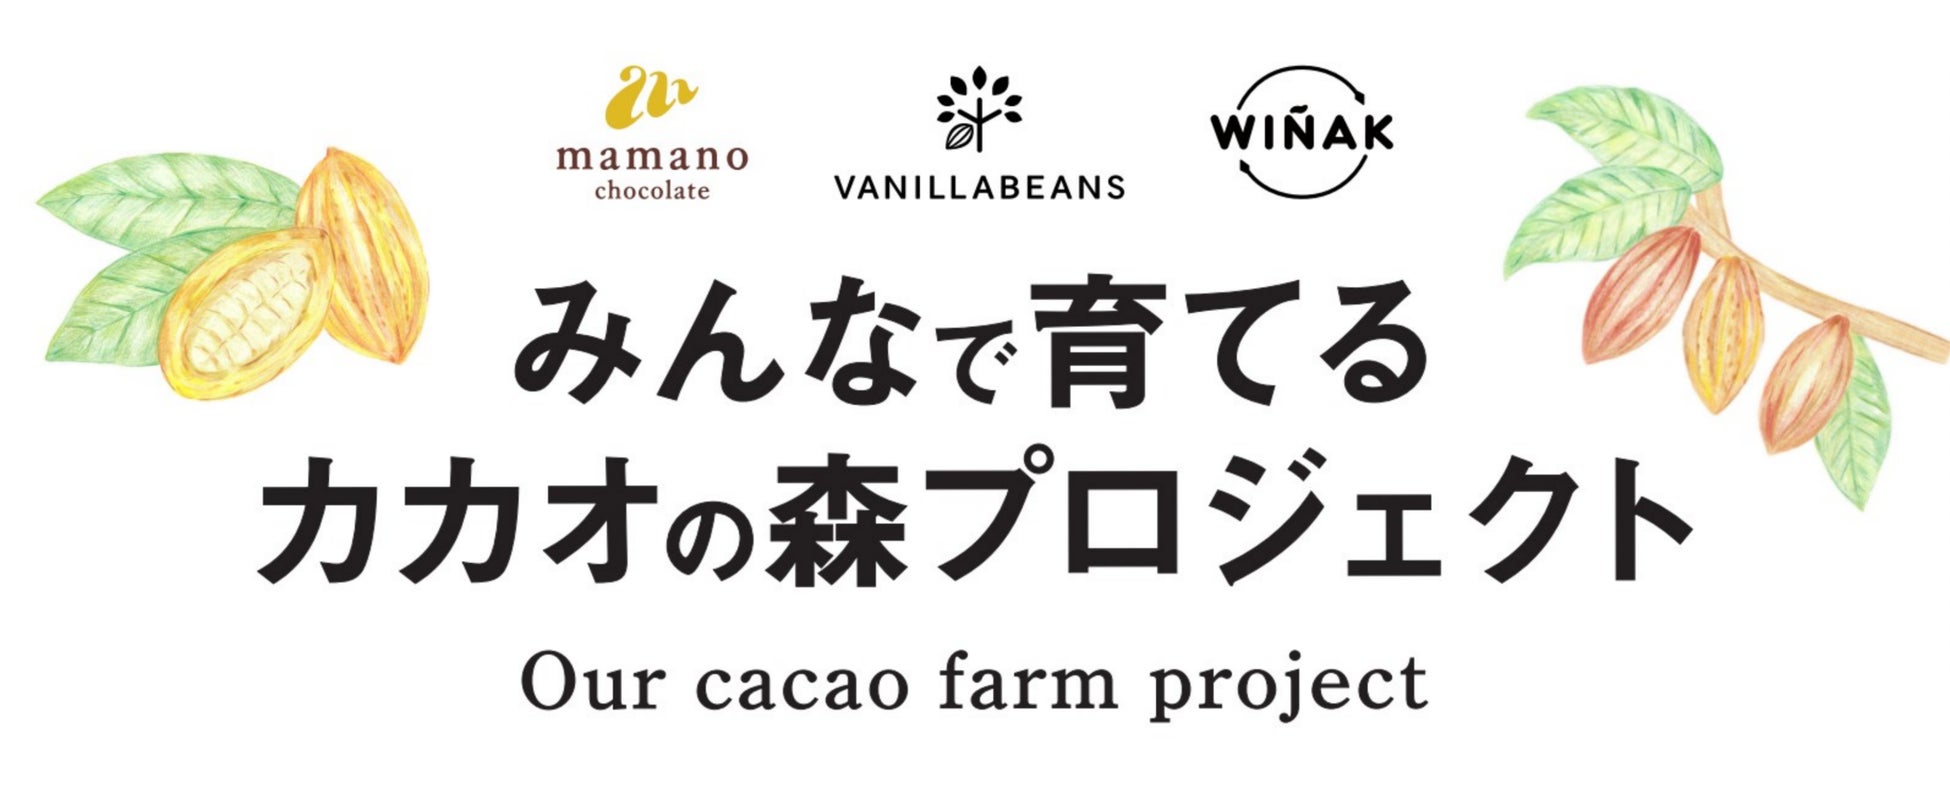 貧困や気候変動対策に、エクアドル産カカオのチョコレート売上10%をカカオ農園支援へ。VANILLABEANSから5月2日(木)より原産国プロジェクト商品企画第二弾スタート。